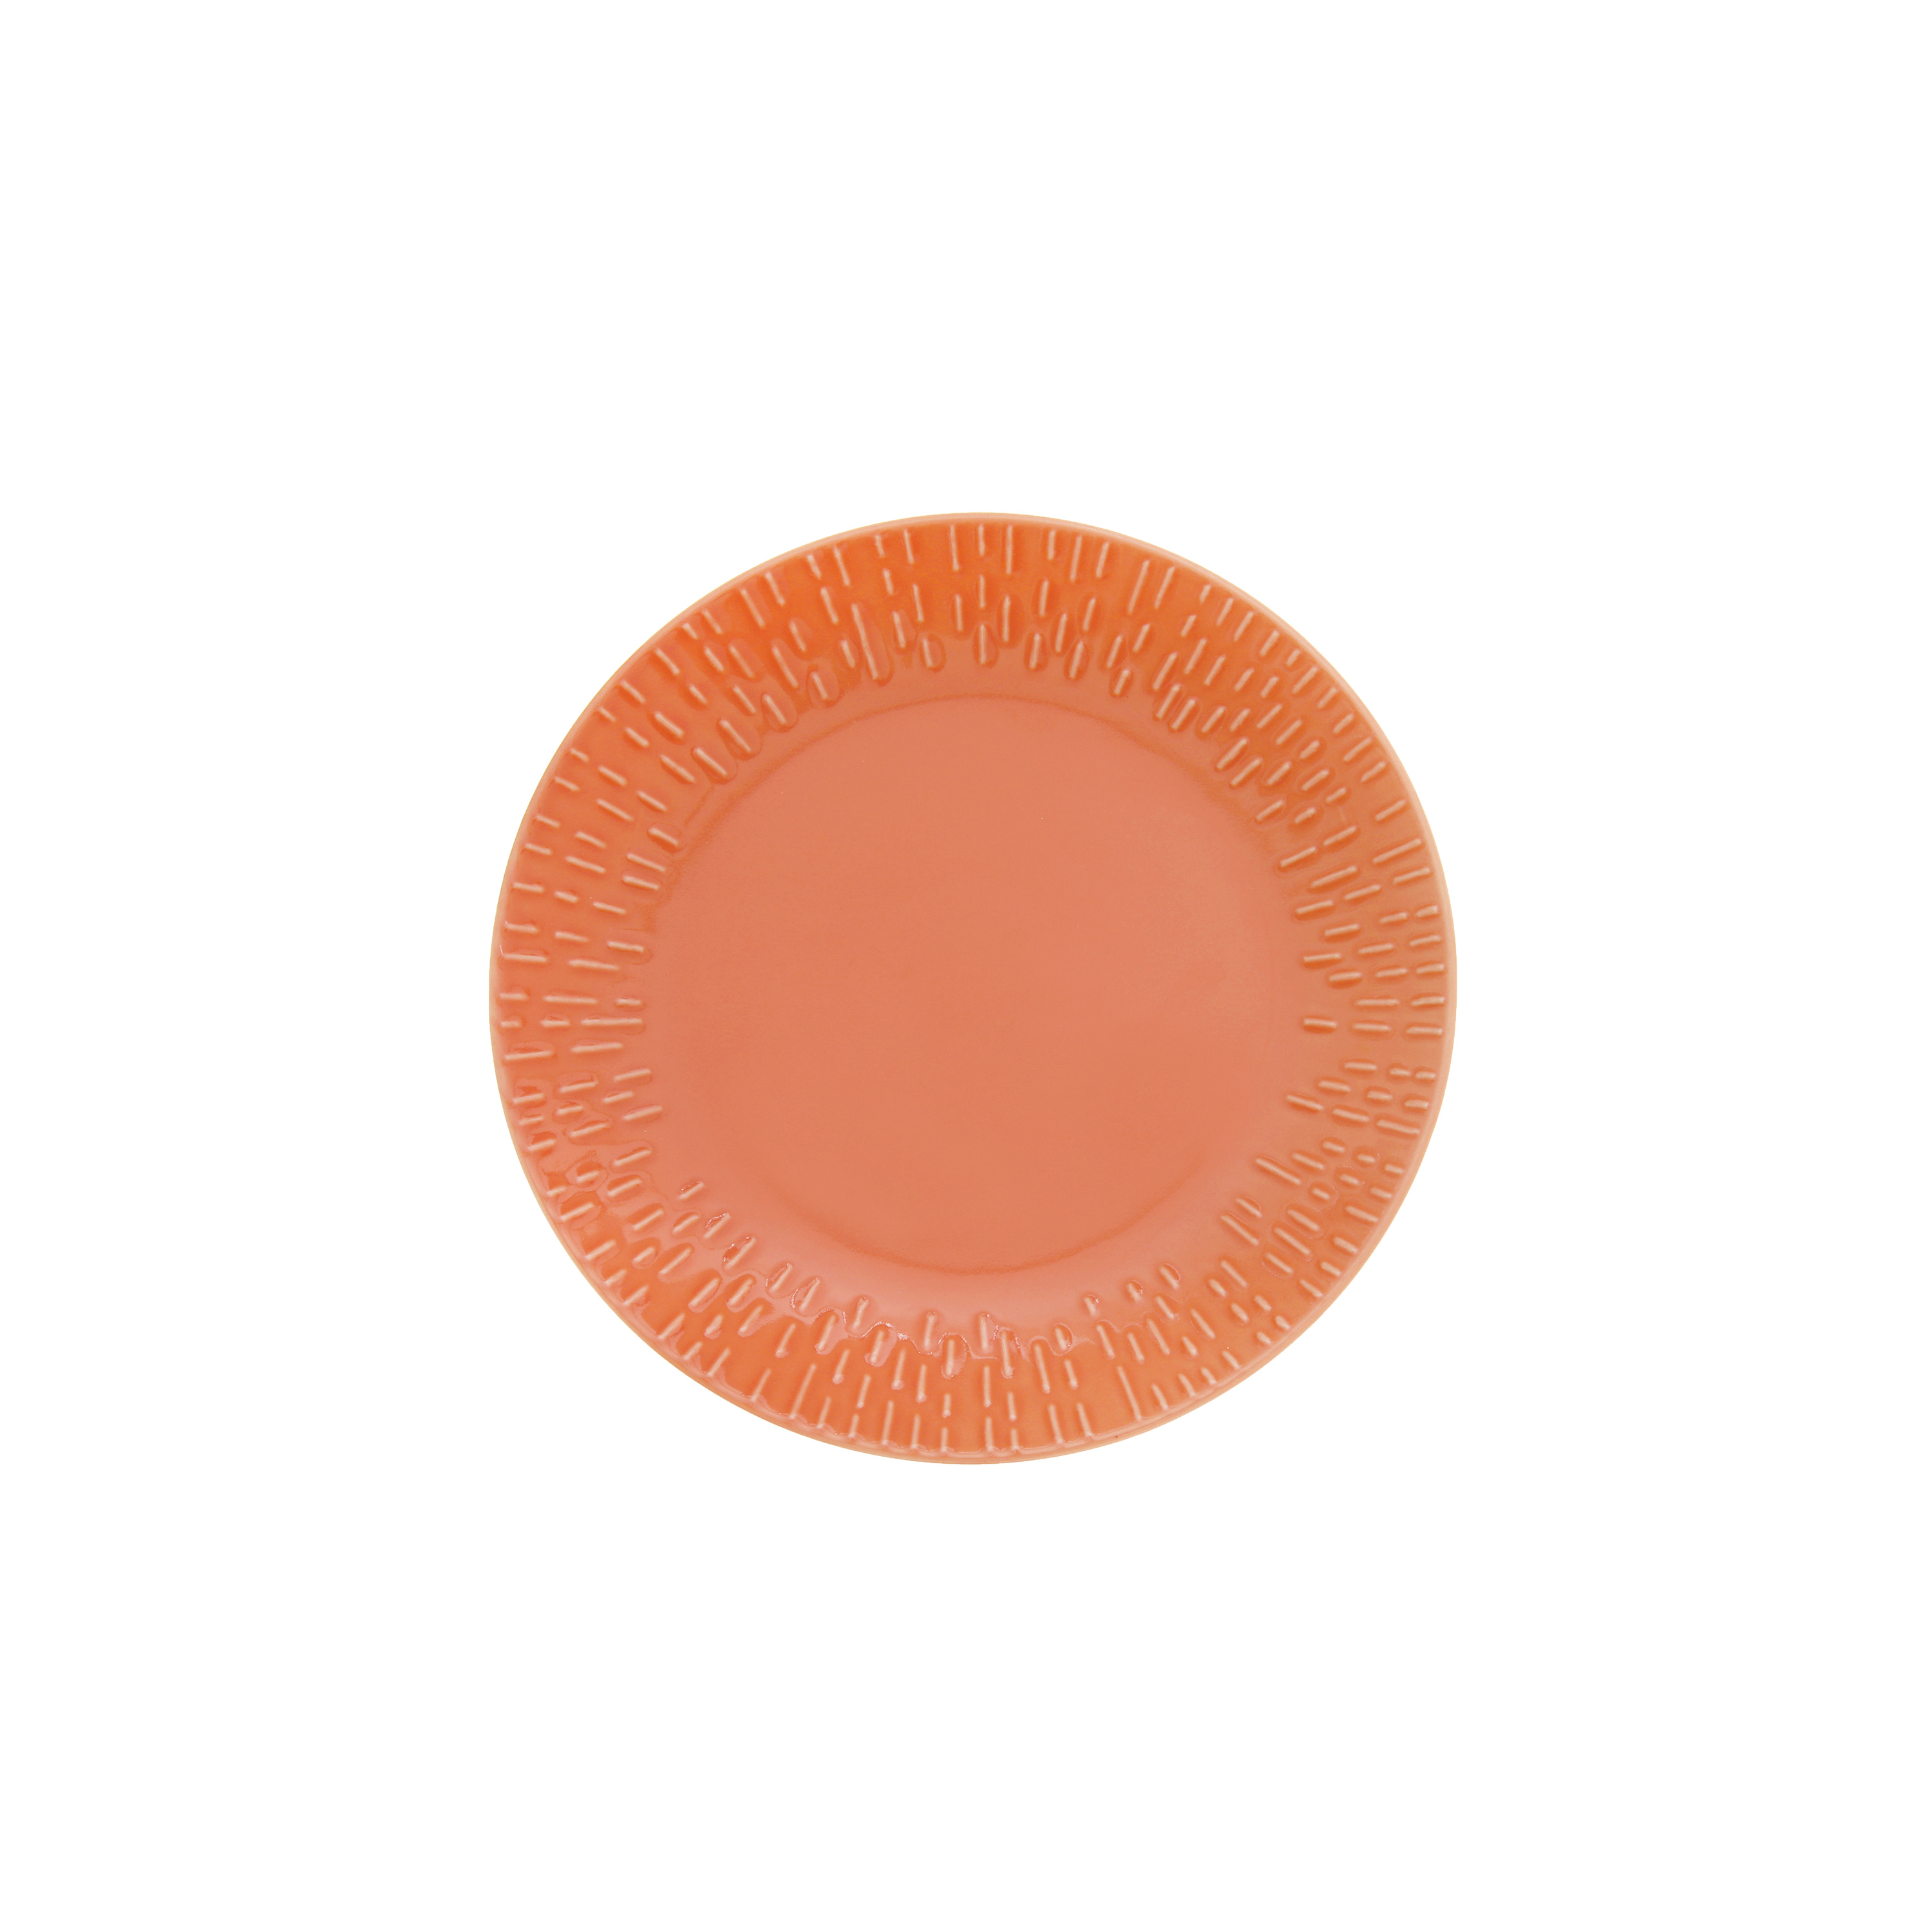 Aida - Life in Colour - Confetti - Apricot dessert plate w/relief porcelain (13322) - Hjemme og kjøkken